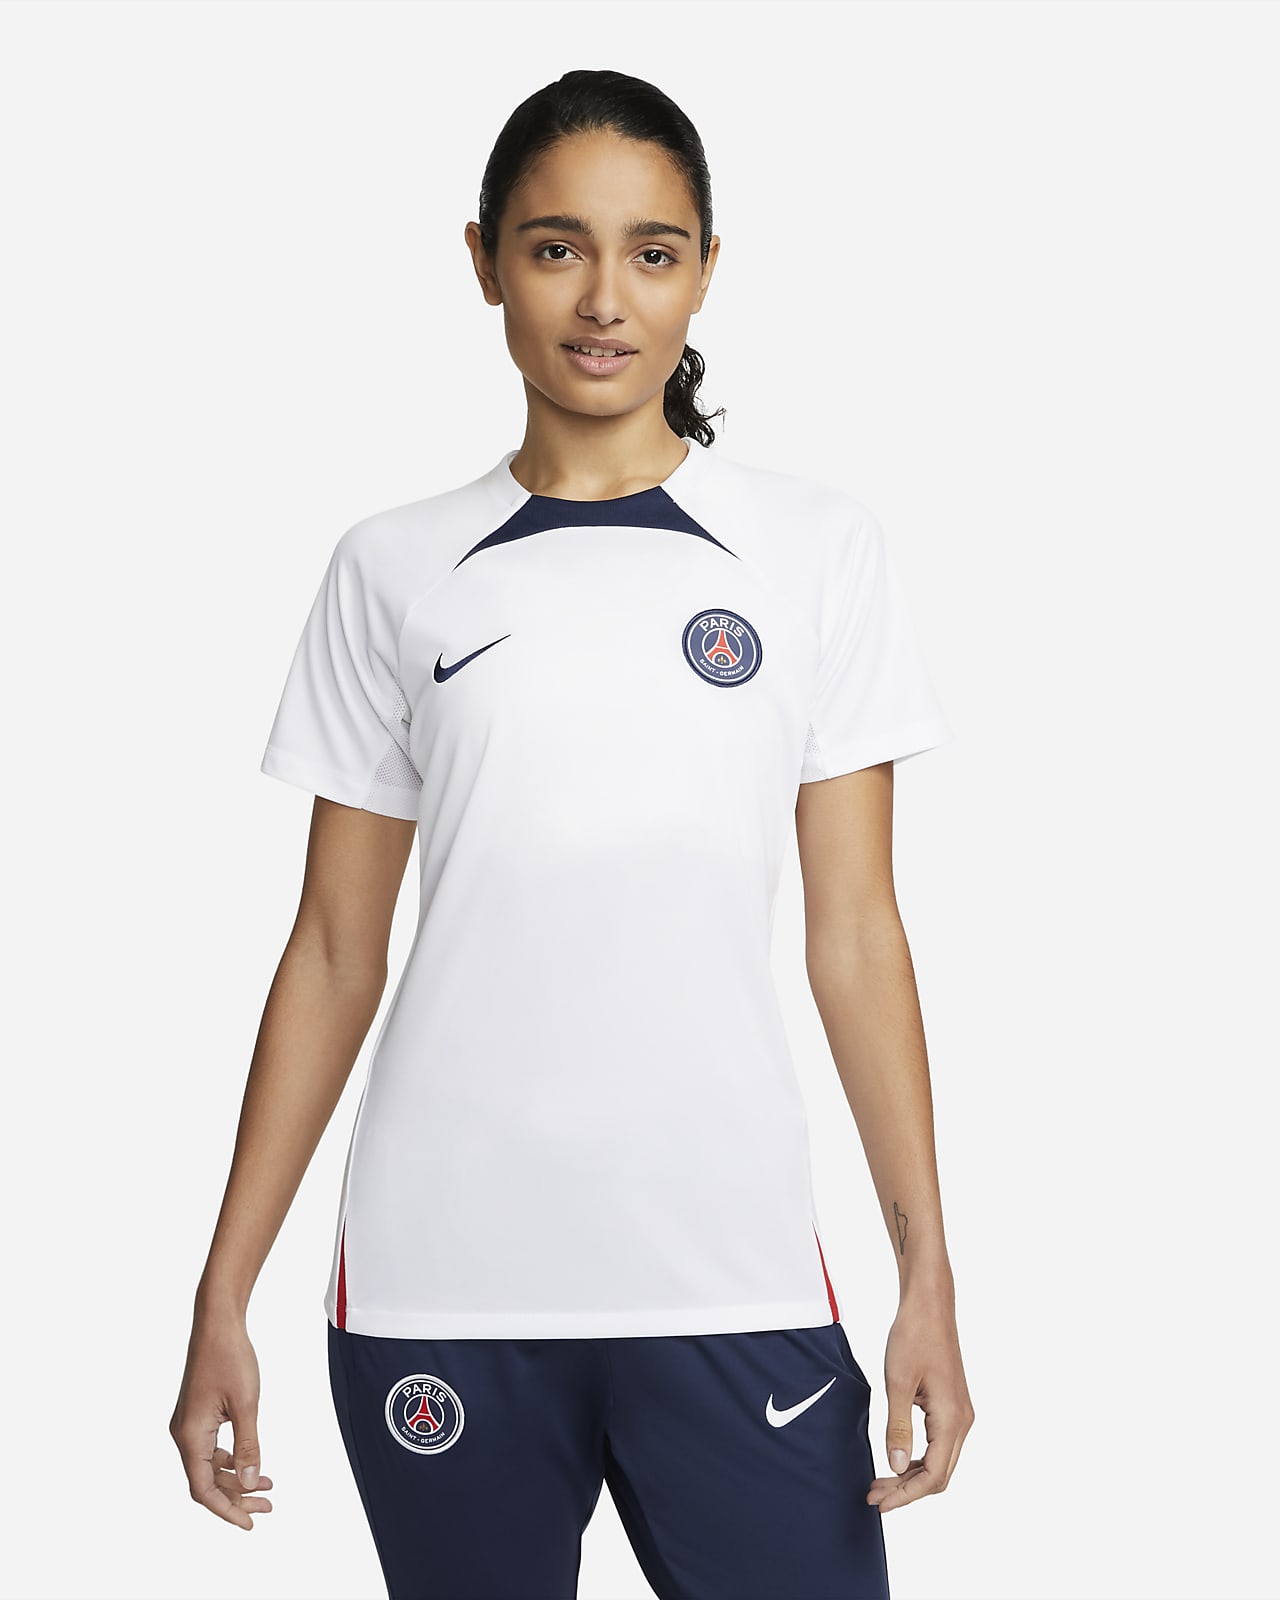 Paris Saint-Germain Nike Dri-FIT Short-Sleeve Soccer Top.